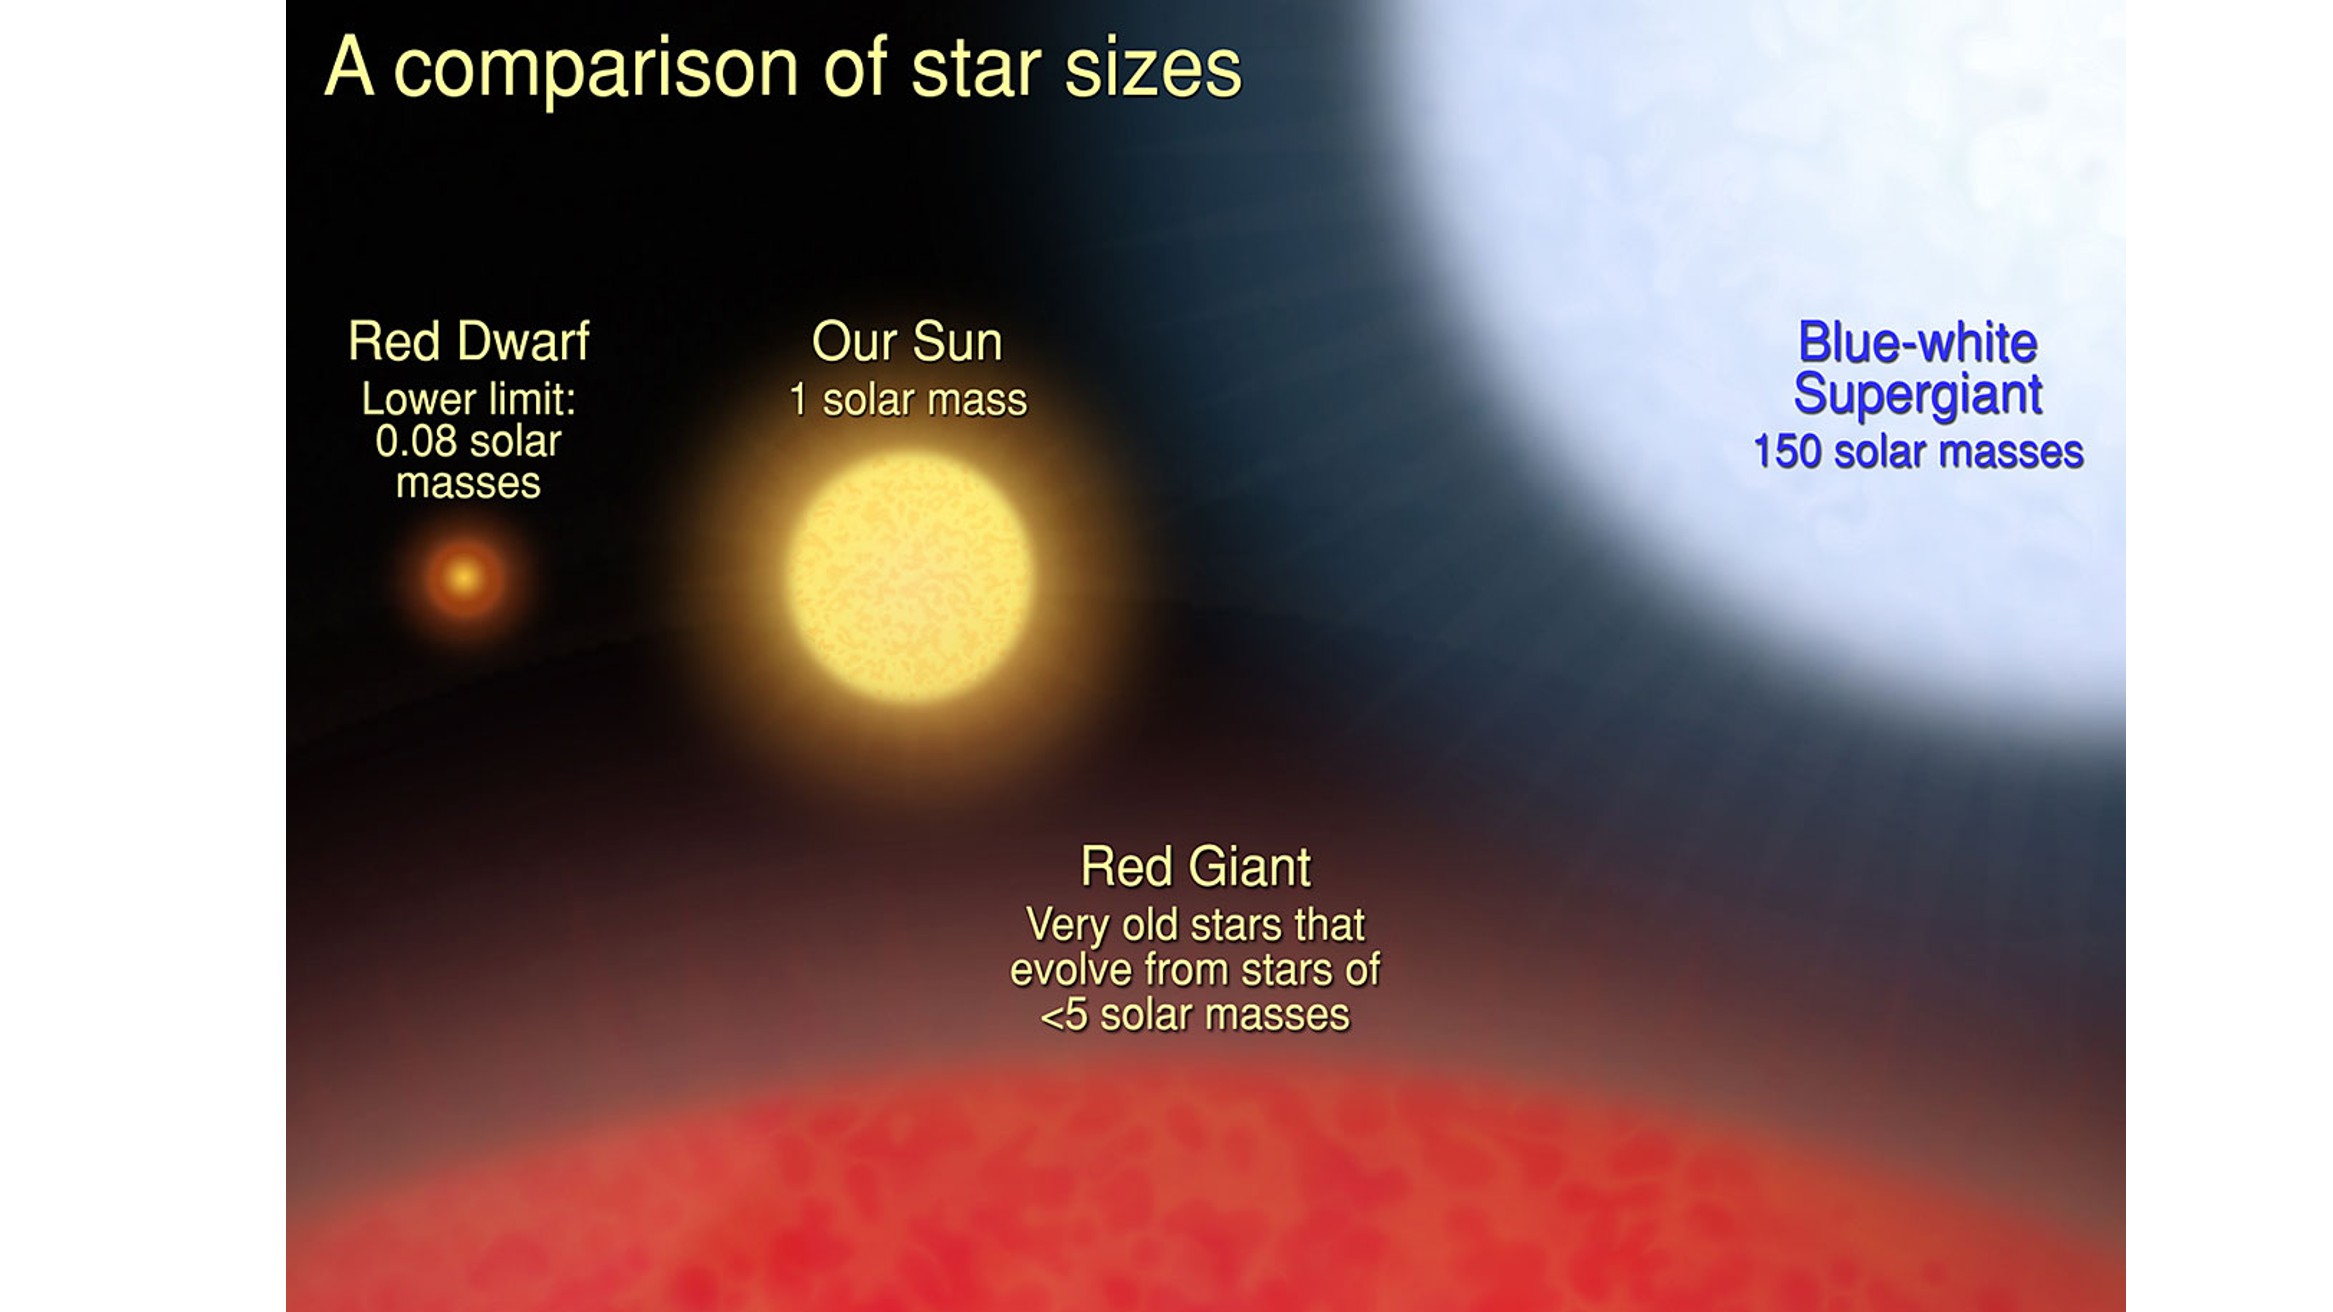 Exemples illustratifs des plus petites étoiles naines rouges, de notre soleil, des géantes rouges et de la plus grande étoile géante bleu-blanc